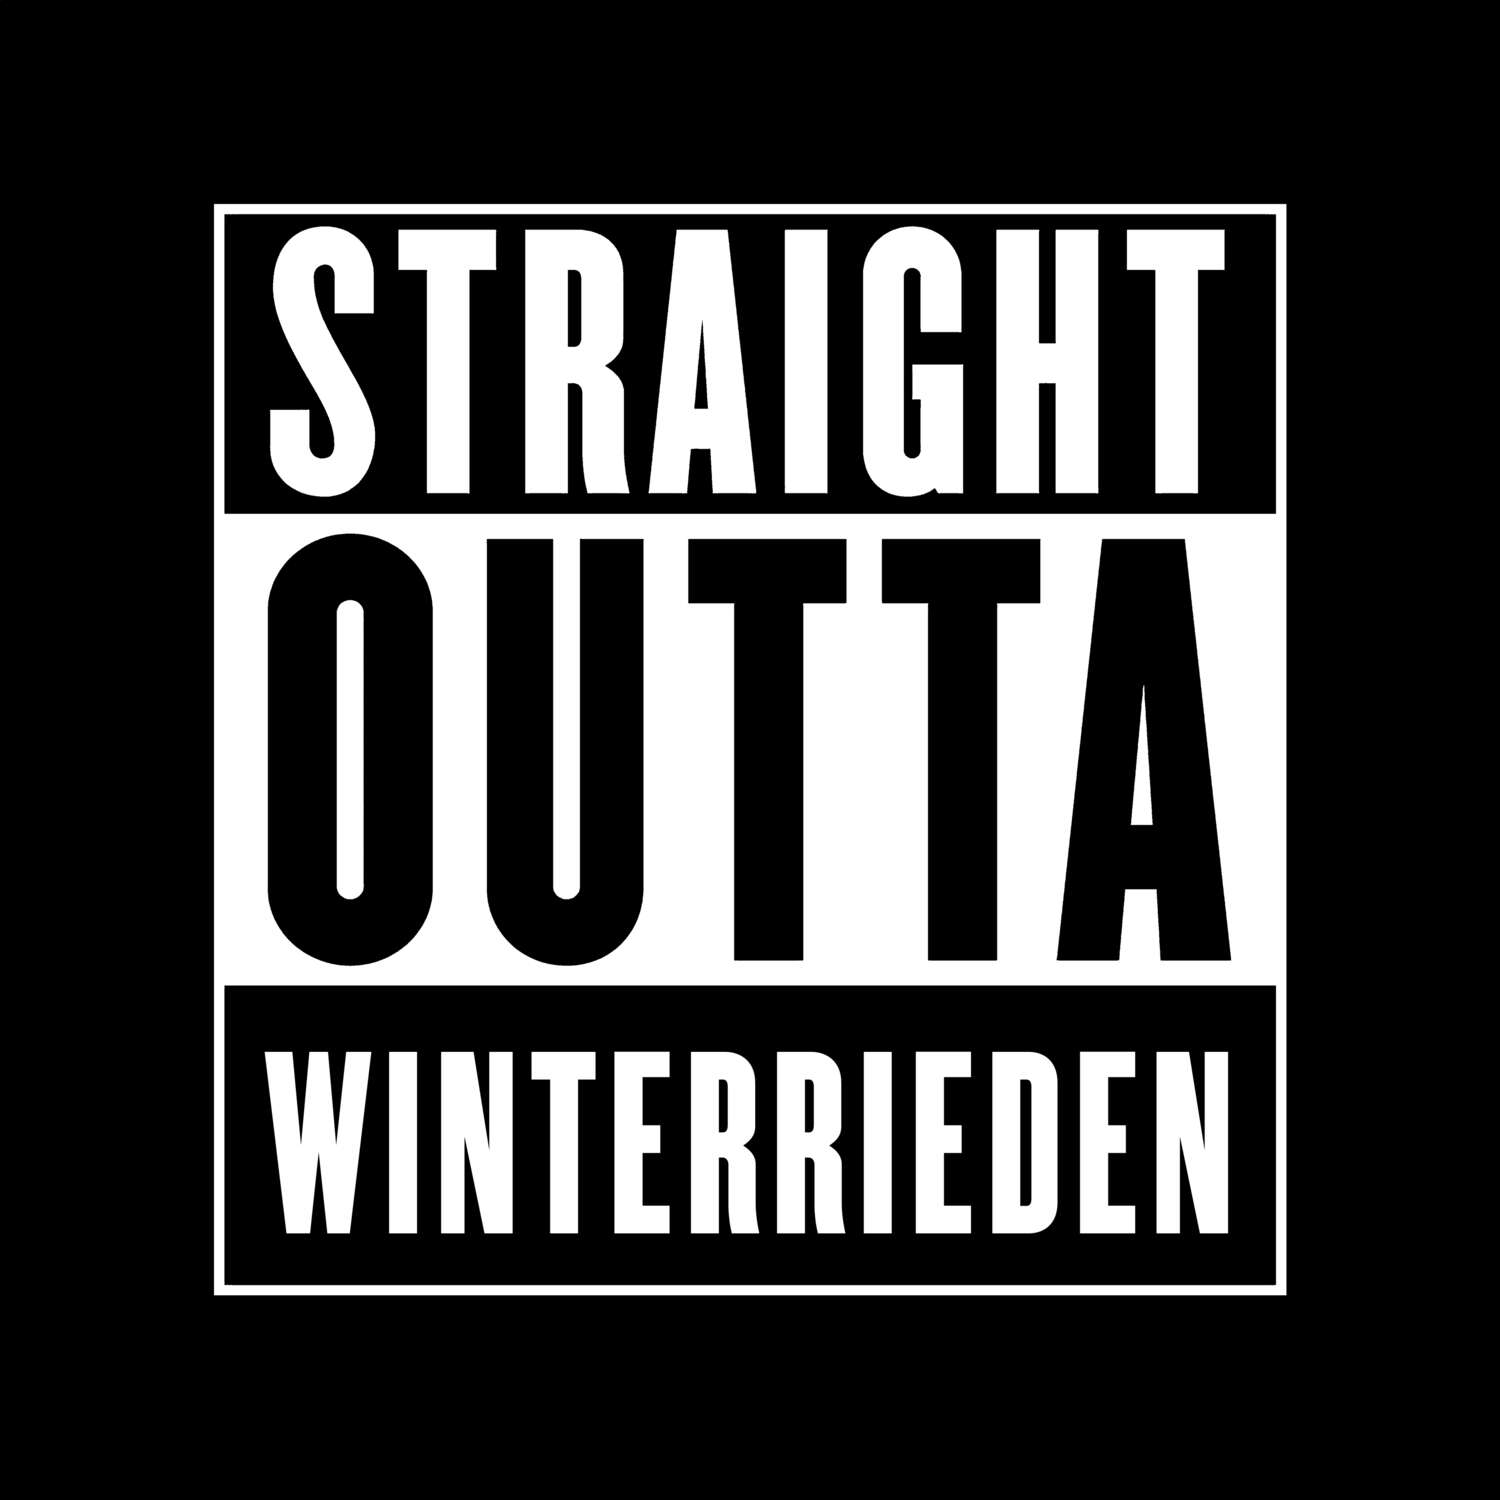 Winterrieden T-Shirt »Straight Outta«